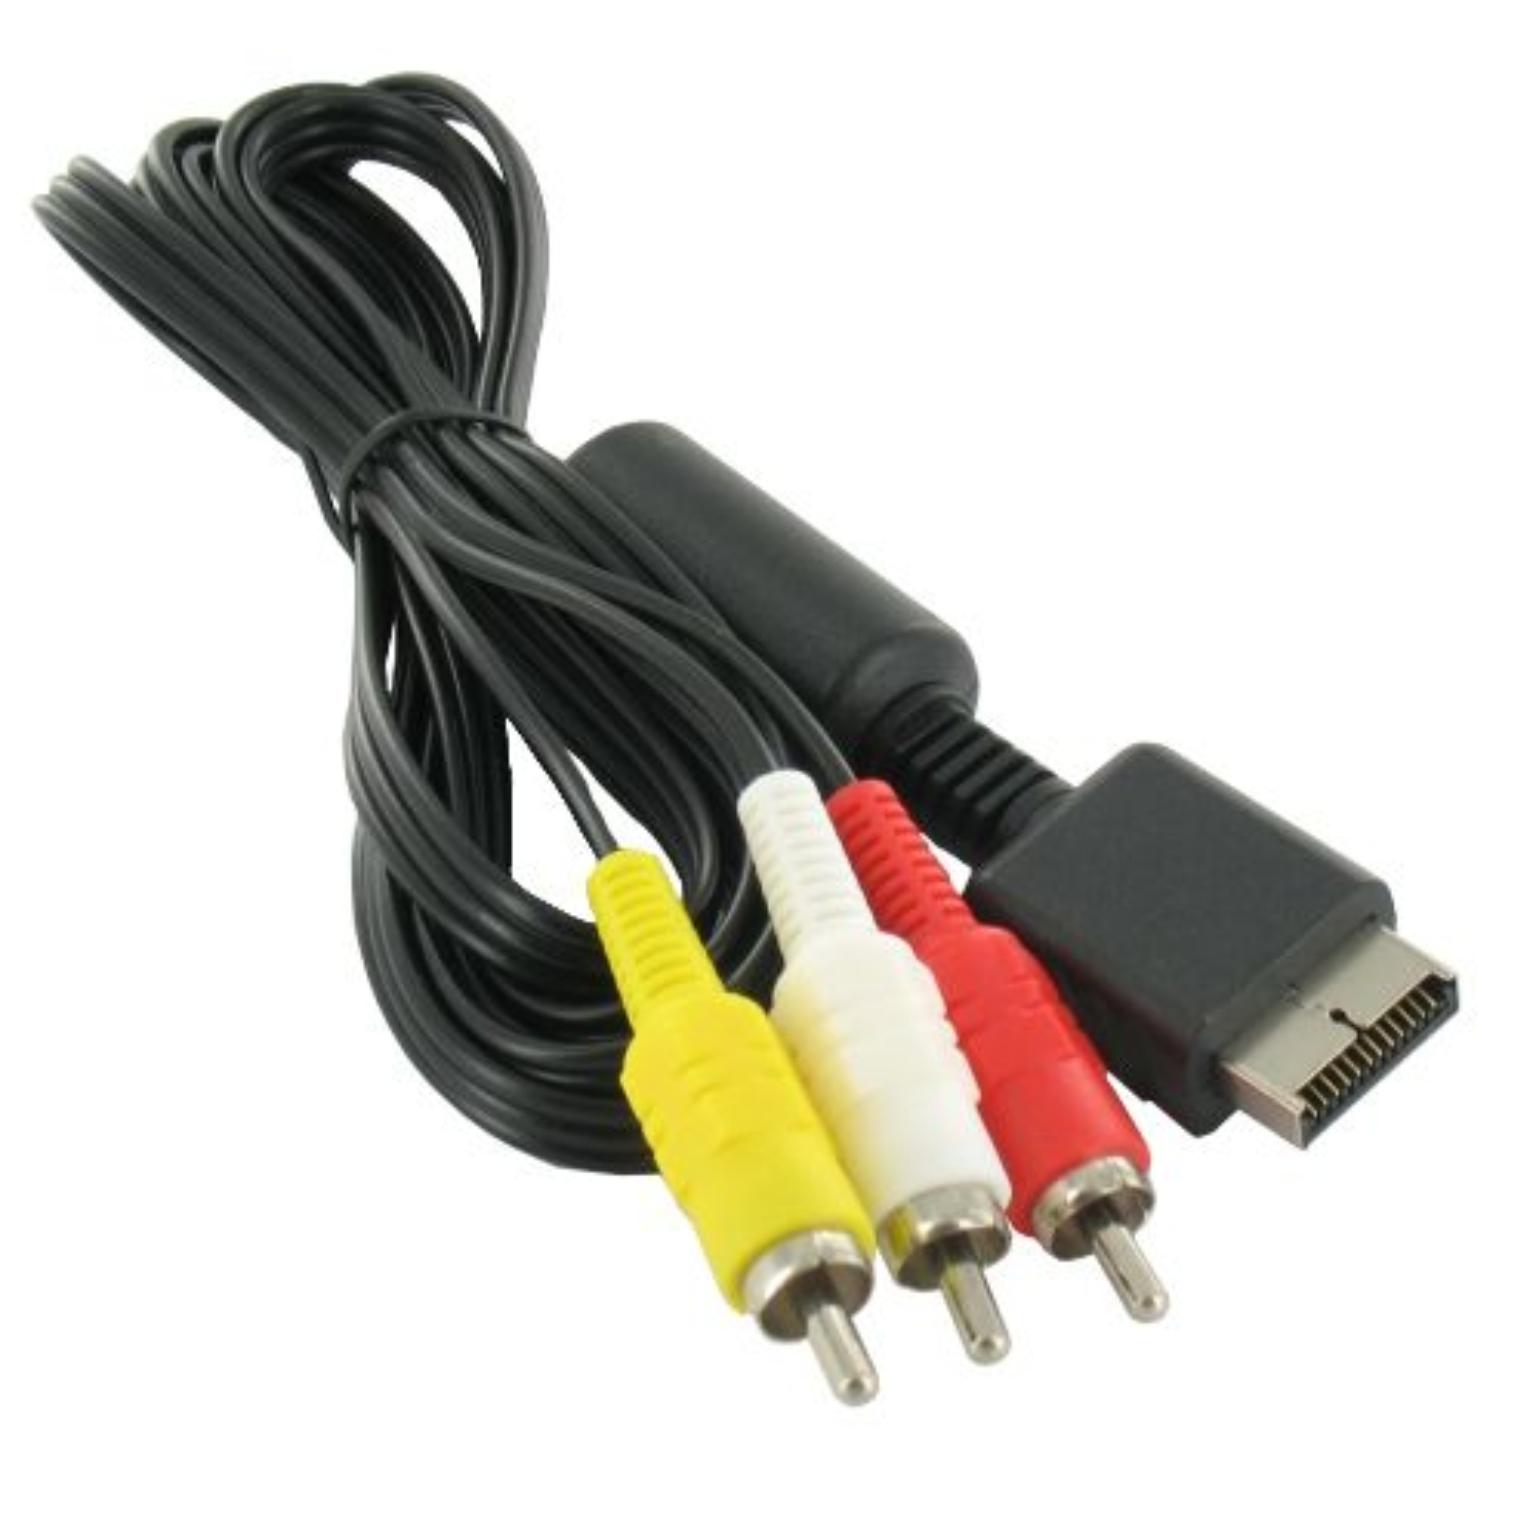 Buskruit Zwaaien Labe Playstation 2 kabel AV kabel Winkel: Bestel goedkoop uw AV kabel